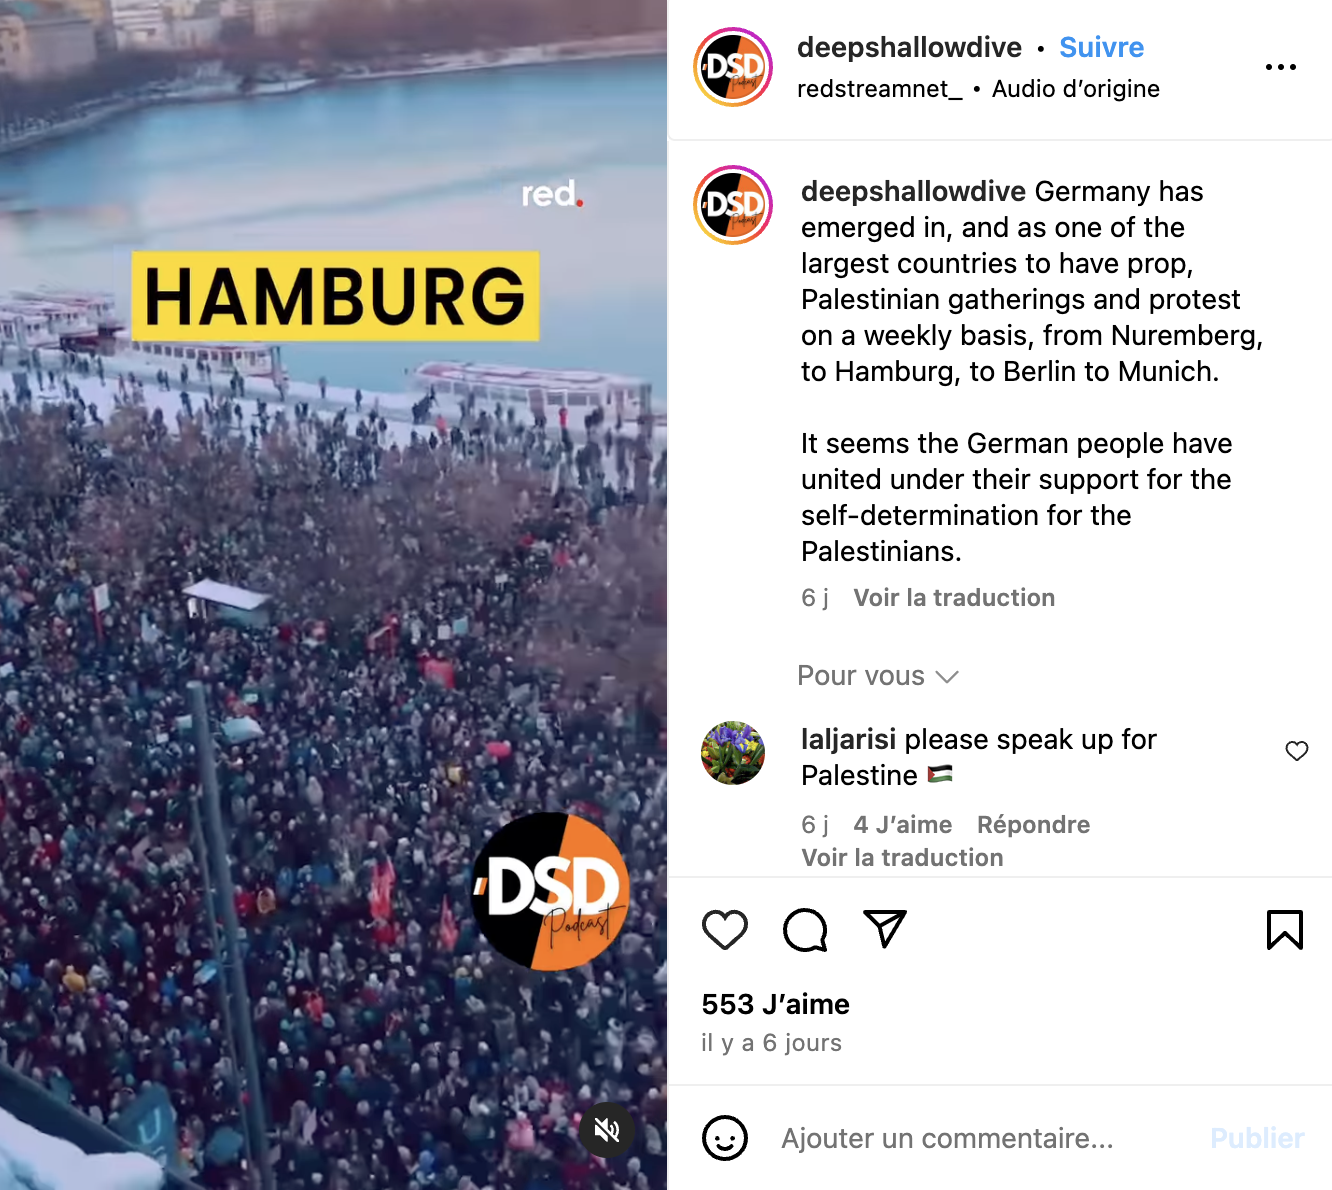 Dies ist ein Screenshot eines Instagram-Posts, in dem fälschlicherweise behauptet wird, dass die im Filmmaterial gezeigten Proteste zur Unterstützung der Palästinenser stattfanden.